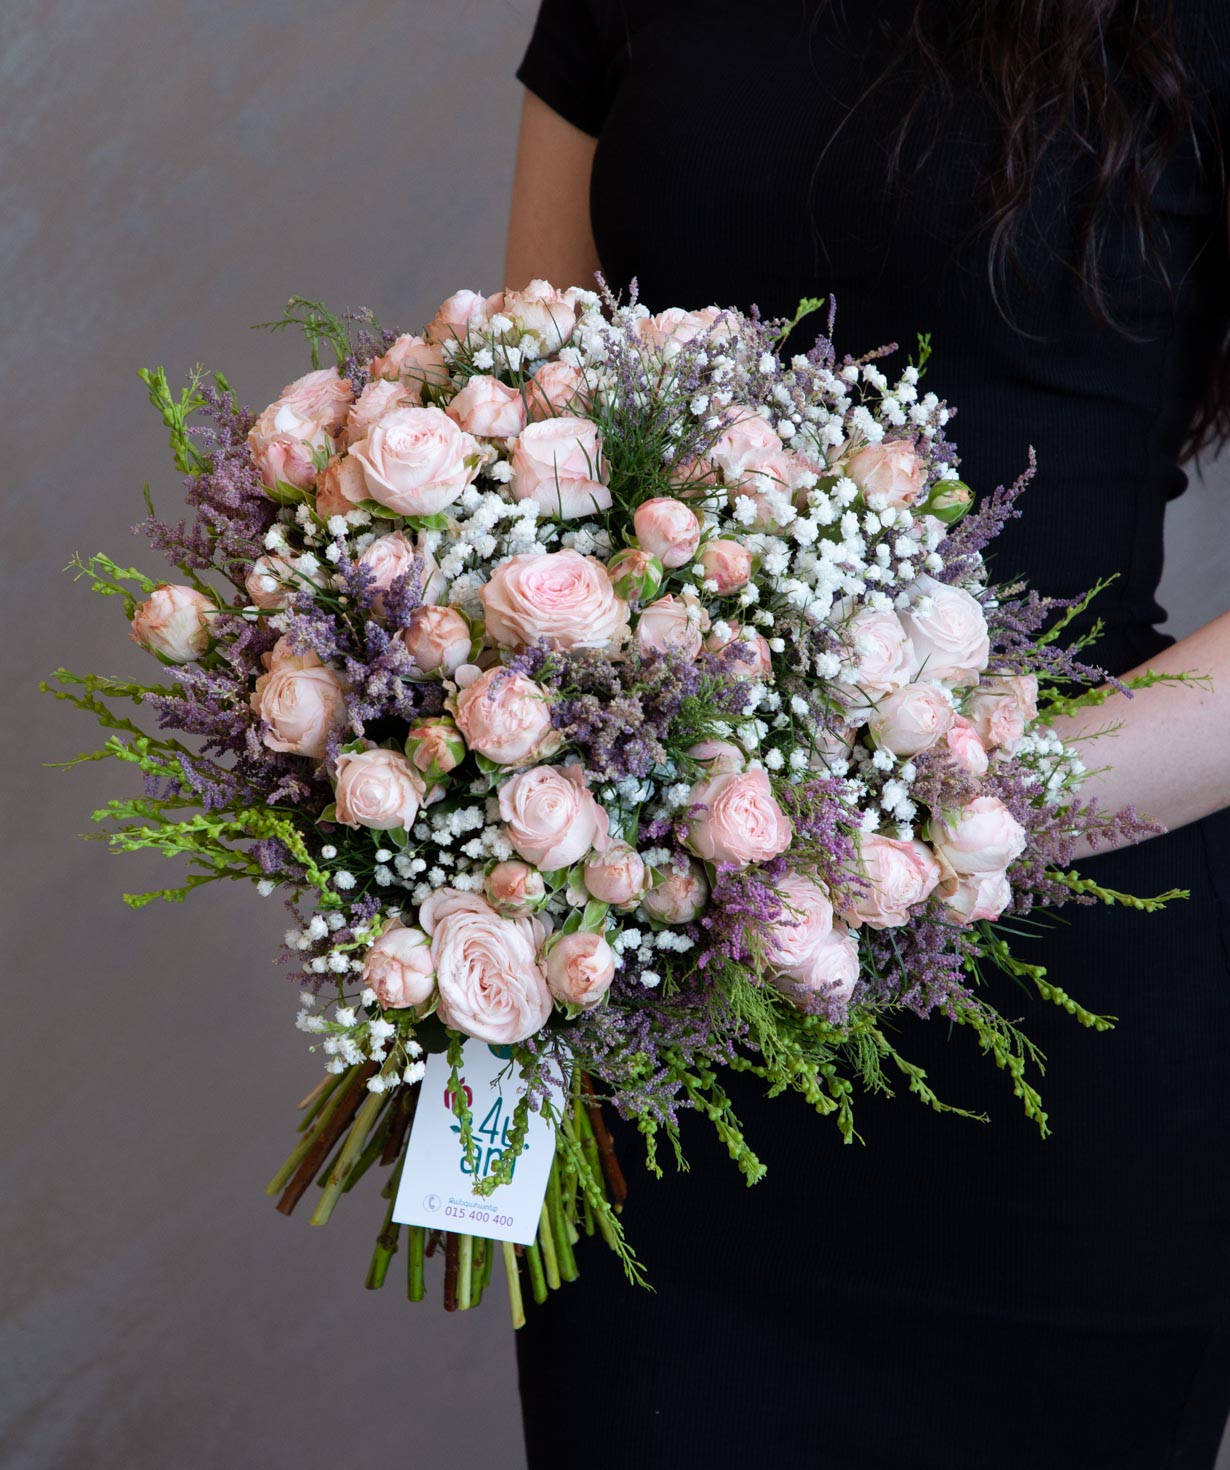 Ծաղկեփունջ «Օրլանդո» վարդերով և գիպսոֆիլաներով